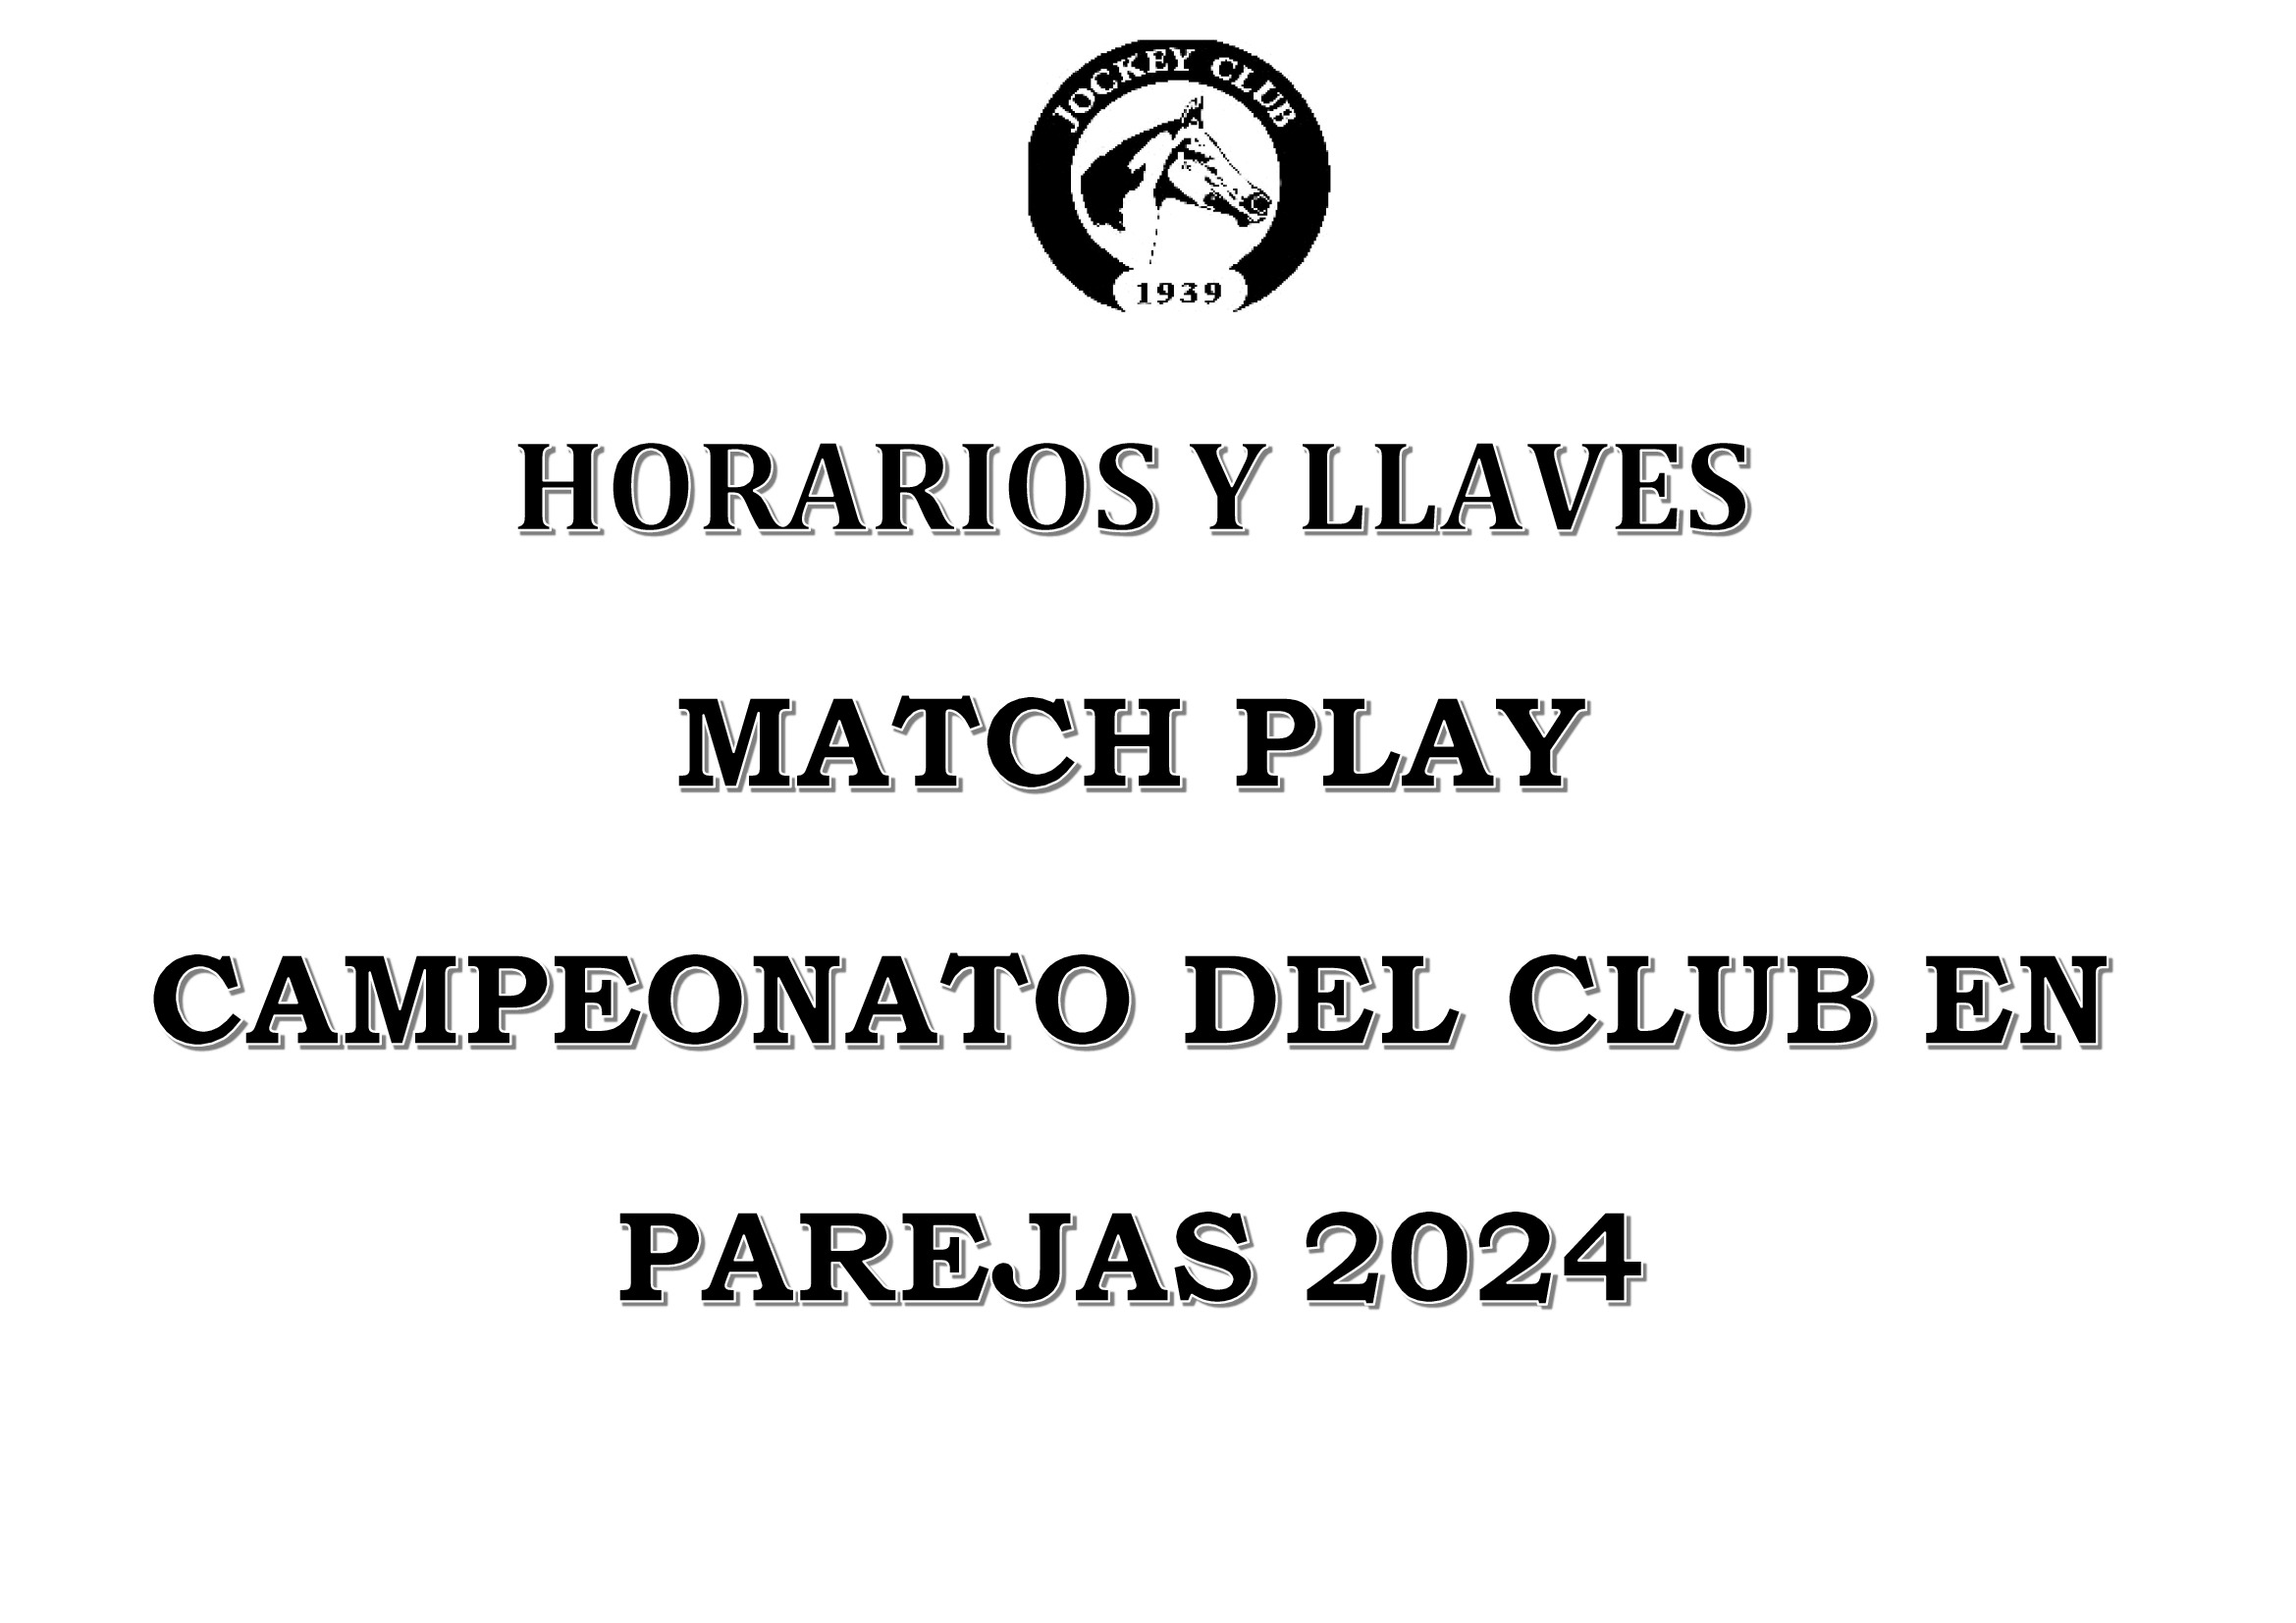 MATCH PLAY CAMPEONATO DEL CLUB EN PAREJAS 2024